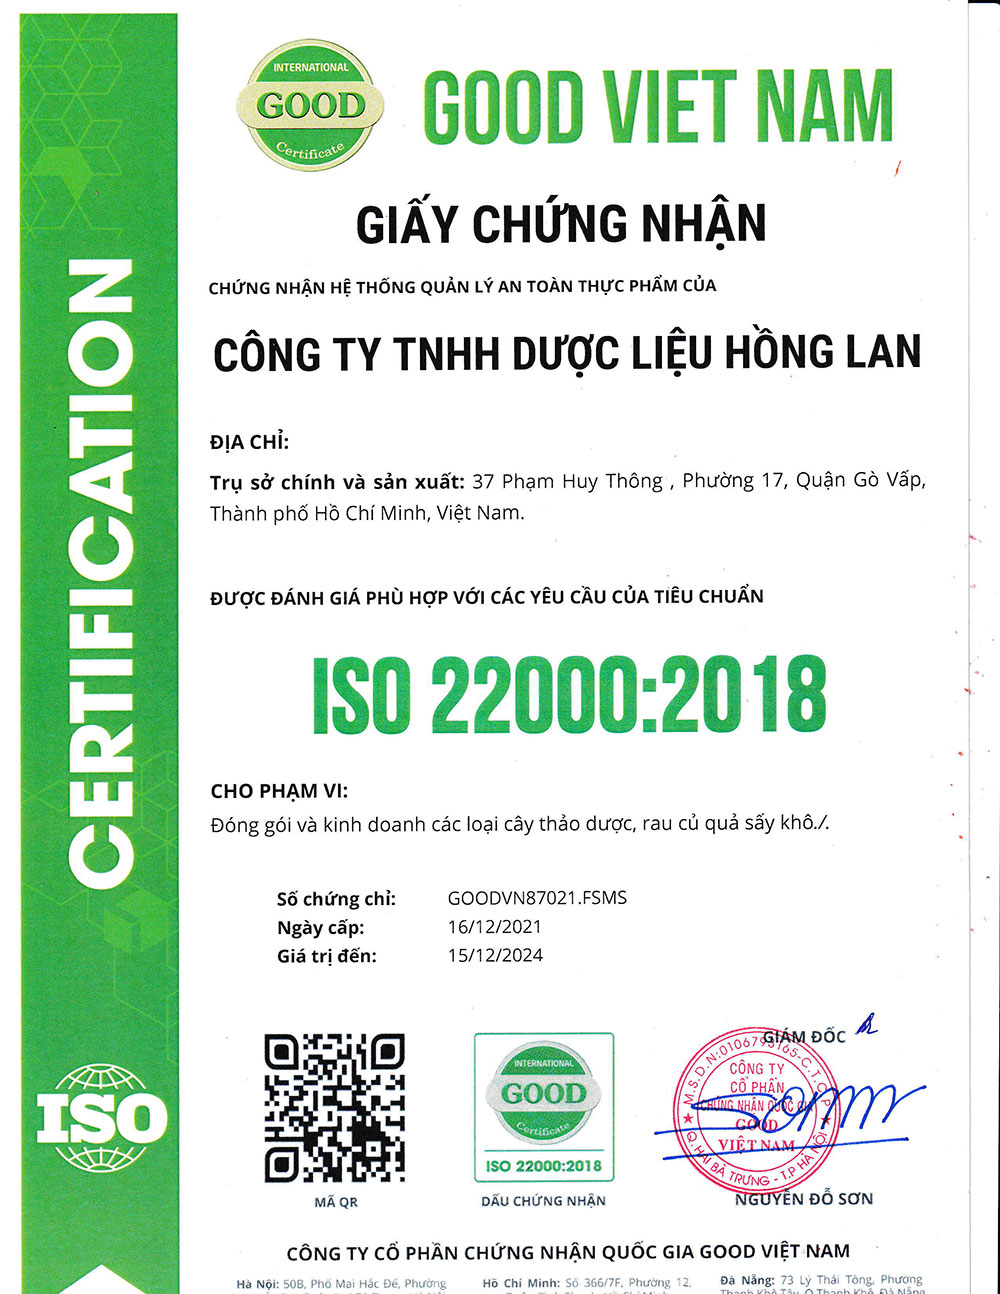 Trà Túi Lọc Hỗ Trợ Bệnh Xương Khớp dạng túi lọc được sản xuất theo hệ thống quản lý an toàn thực phẩm ISO 22000:2018 được cấp bởi công ty cổ phần chứng nhận Quốc Gia Good Việt Nam (Good Viet Nam Certification Joint Stock Company)